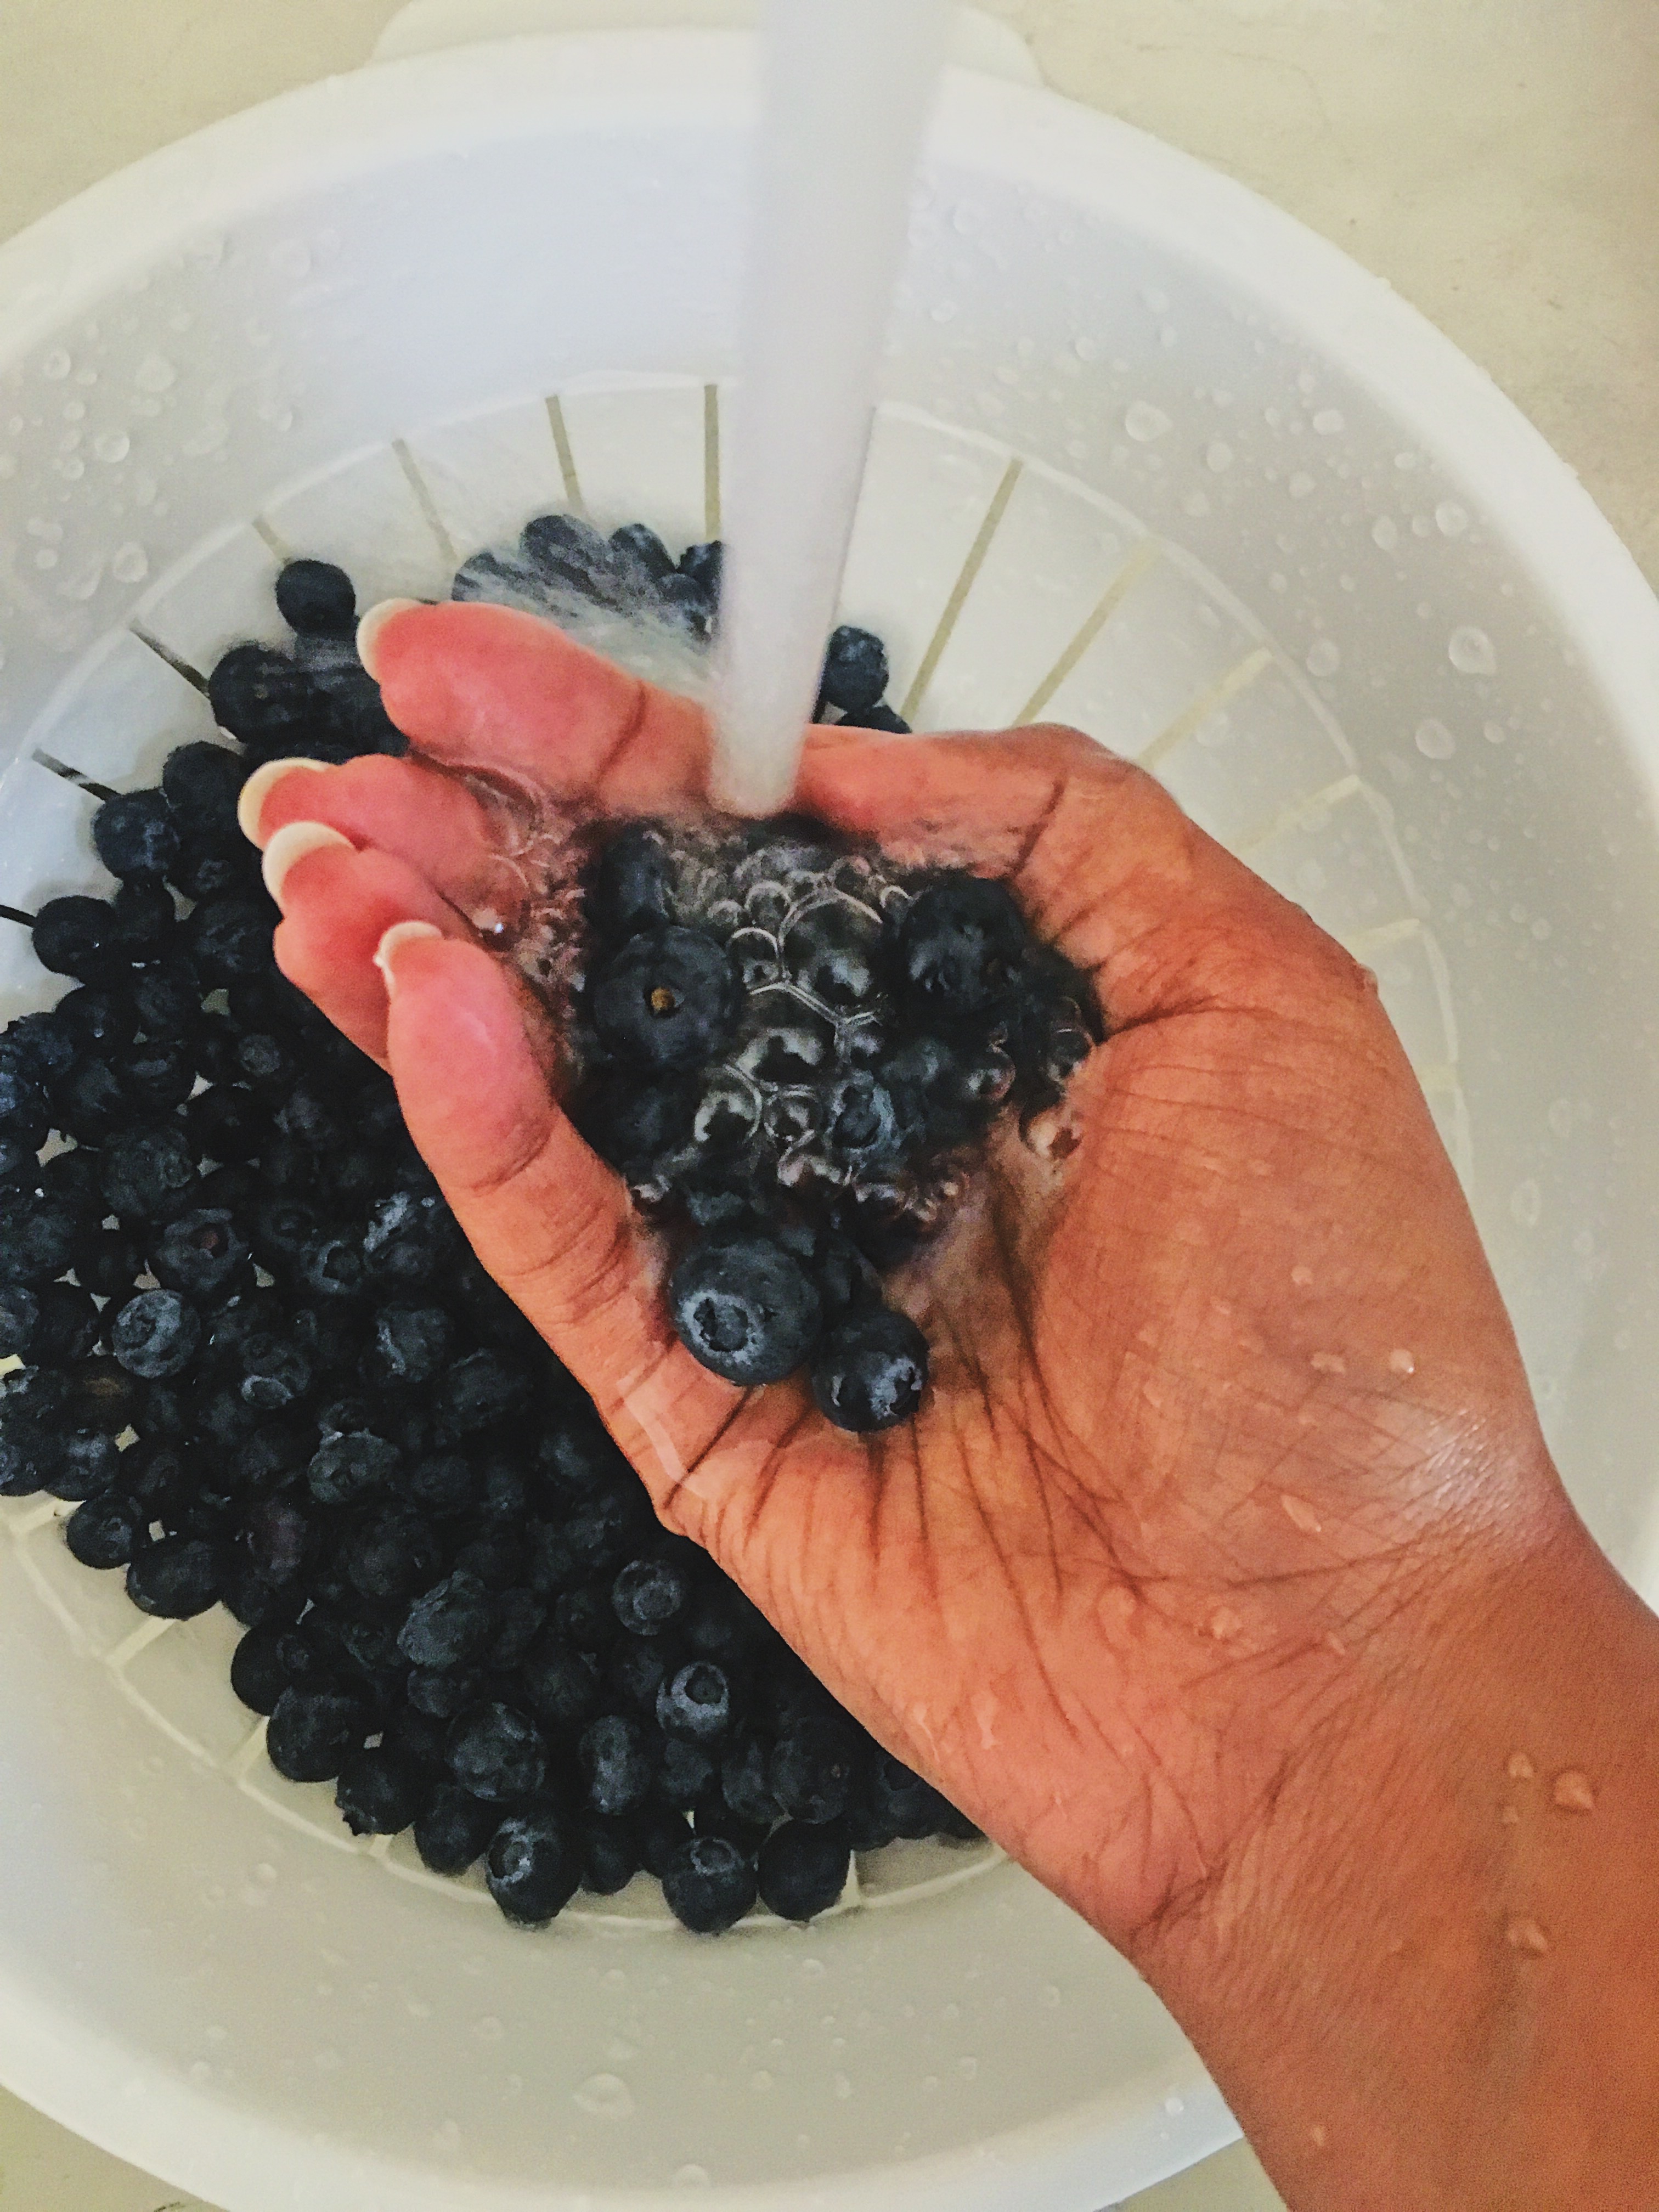 washing blueberries